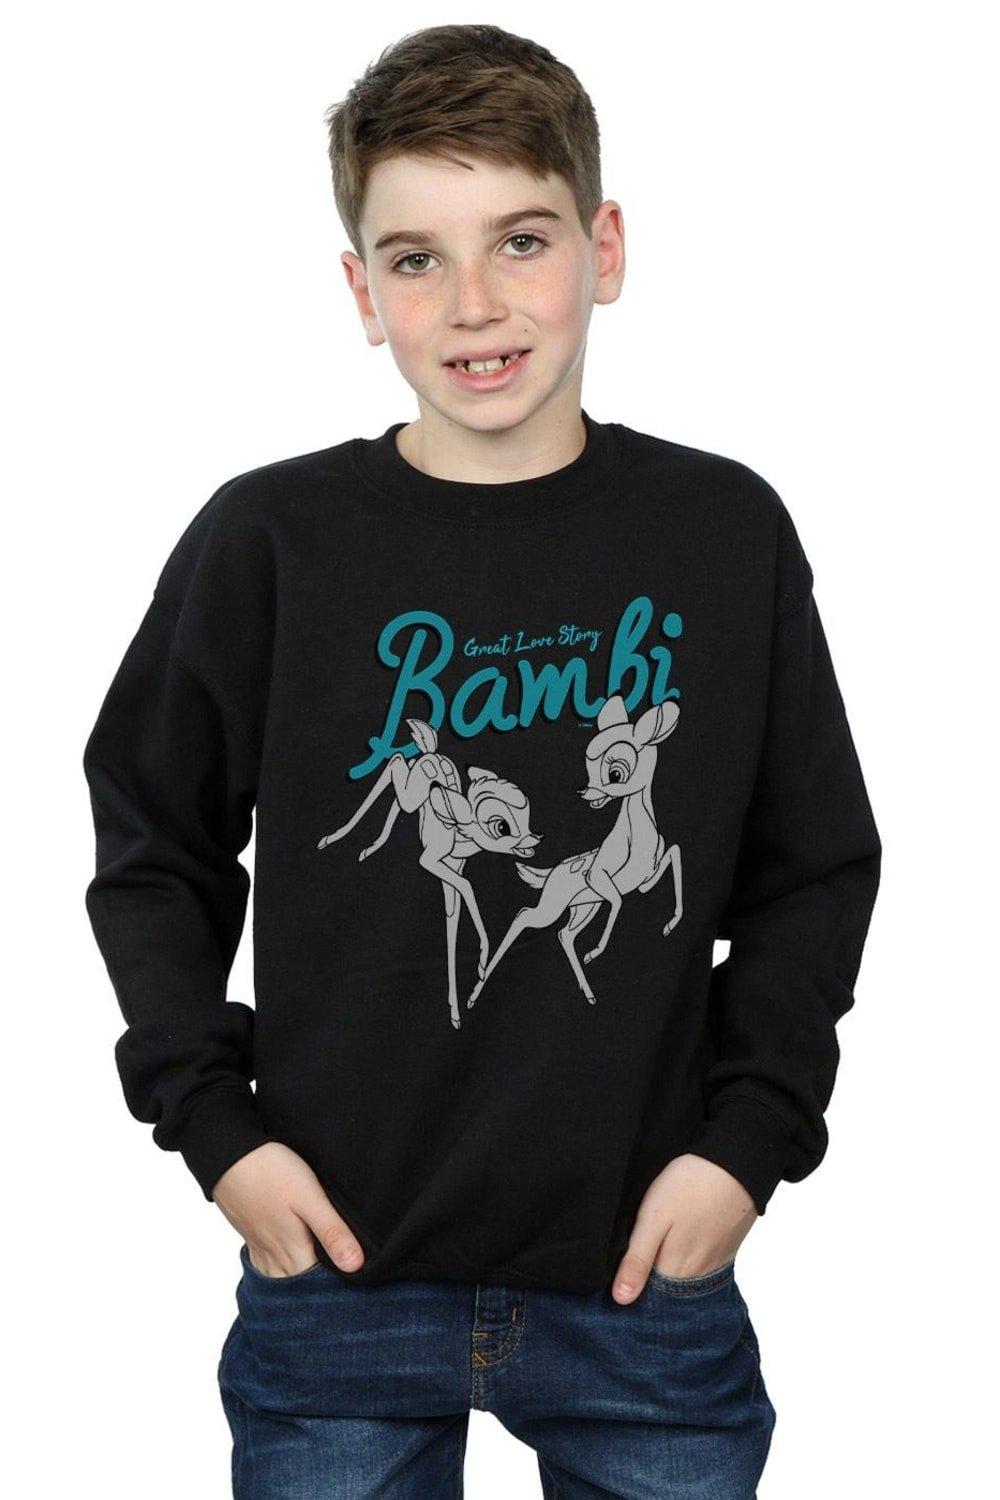 Bambi Great Love Story Sweatshirt